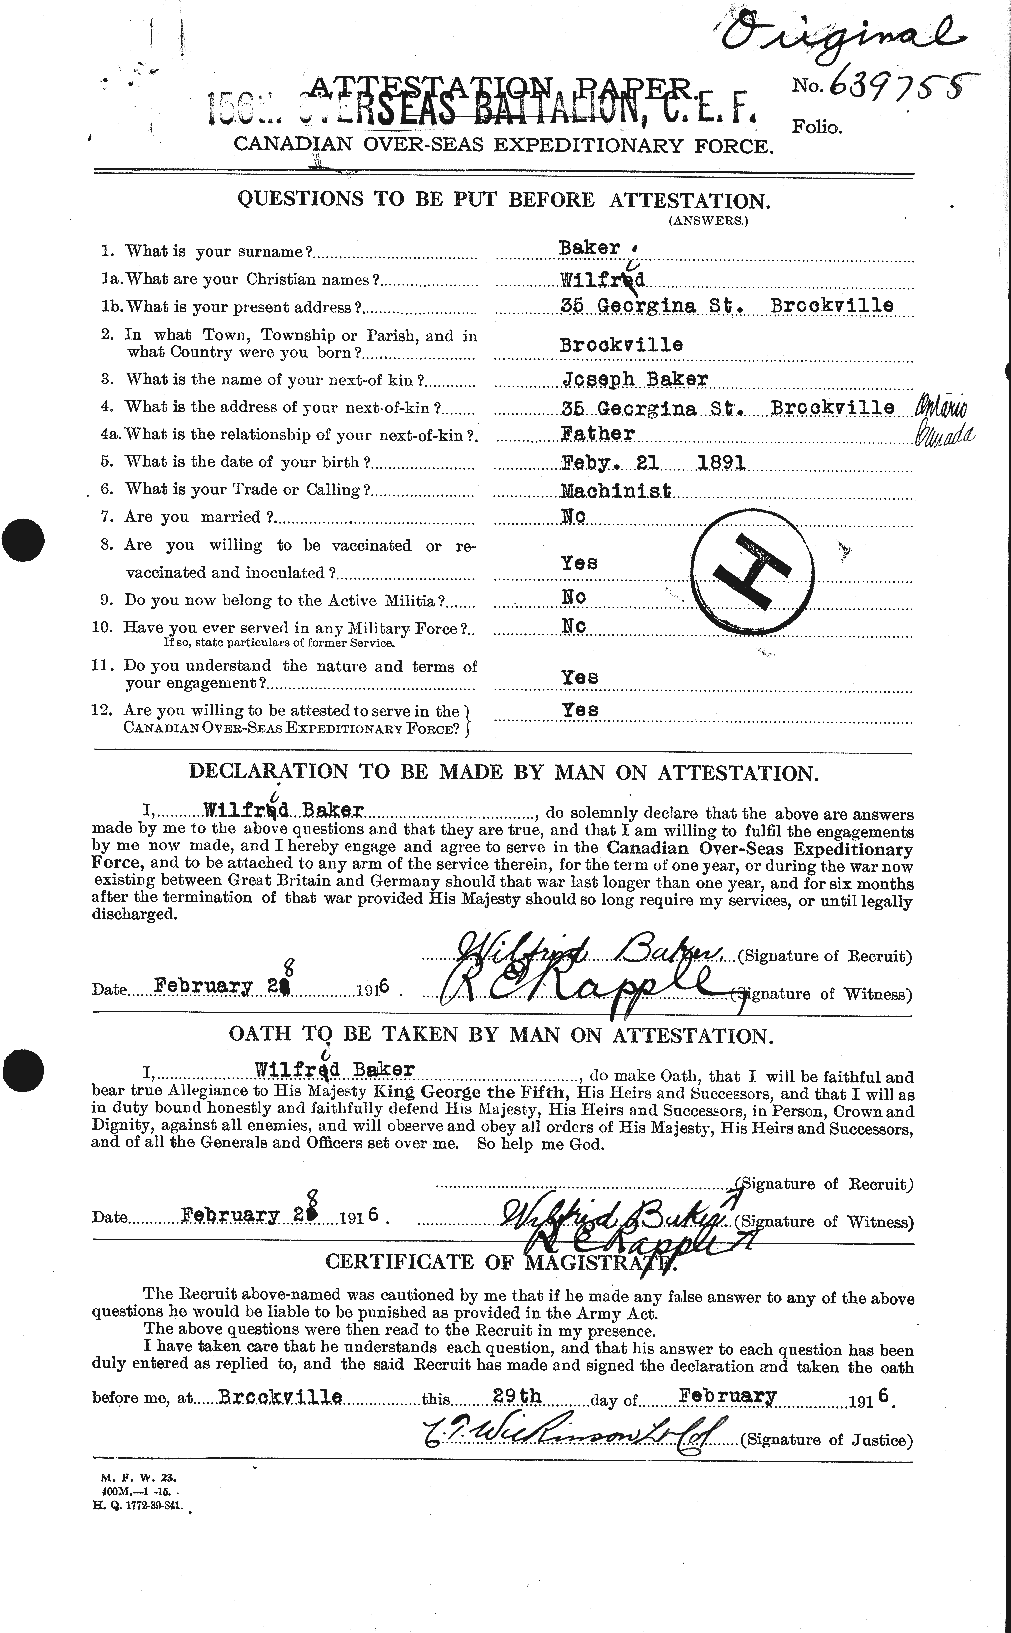 Dossiers du Personnel de la Première Guerre mondiale - CEC 216582a